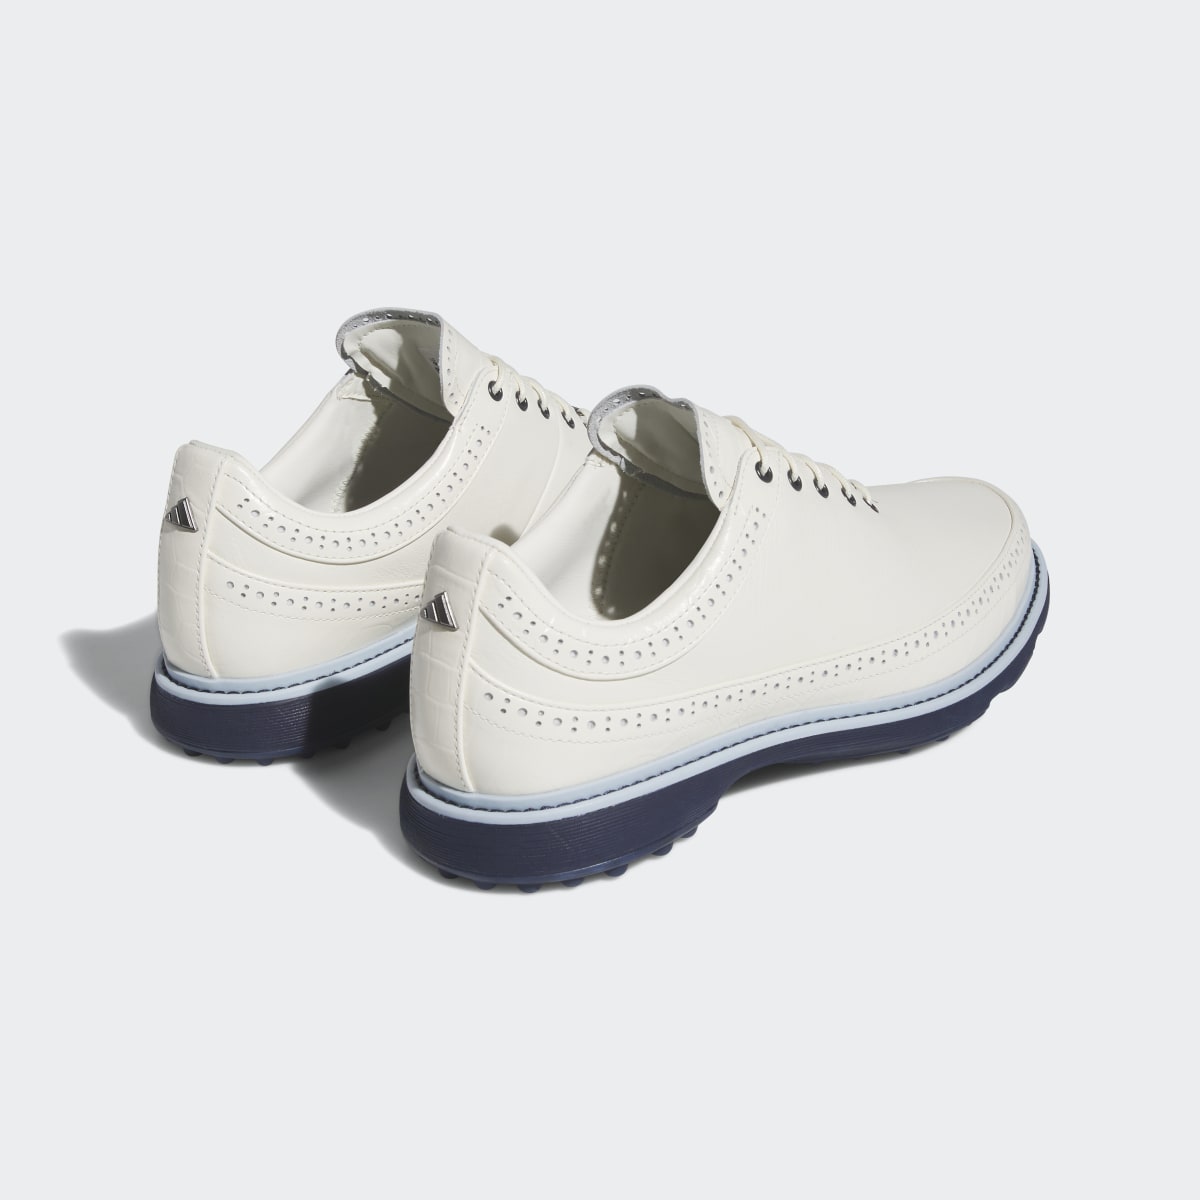 Adidas Modern Classic 80 Spikeless Golf Shoes. 11